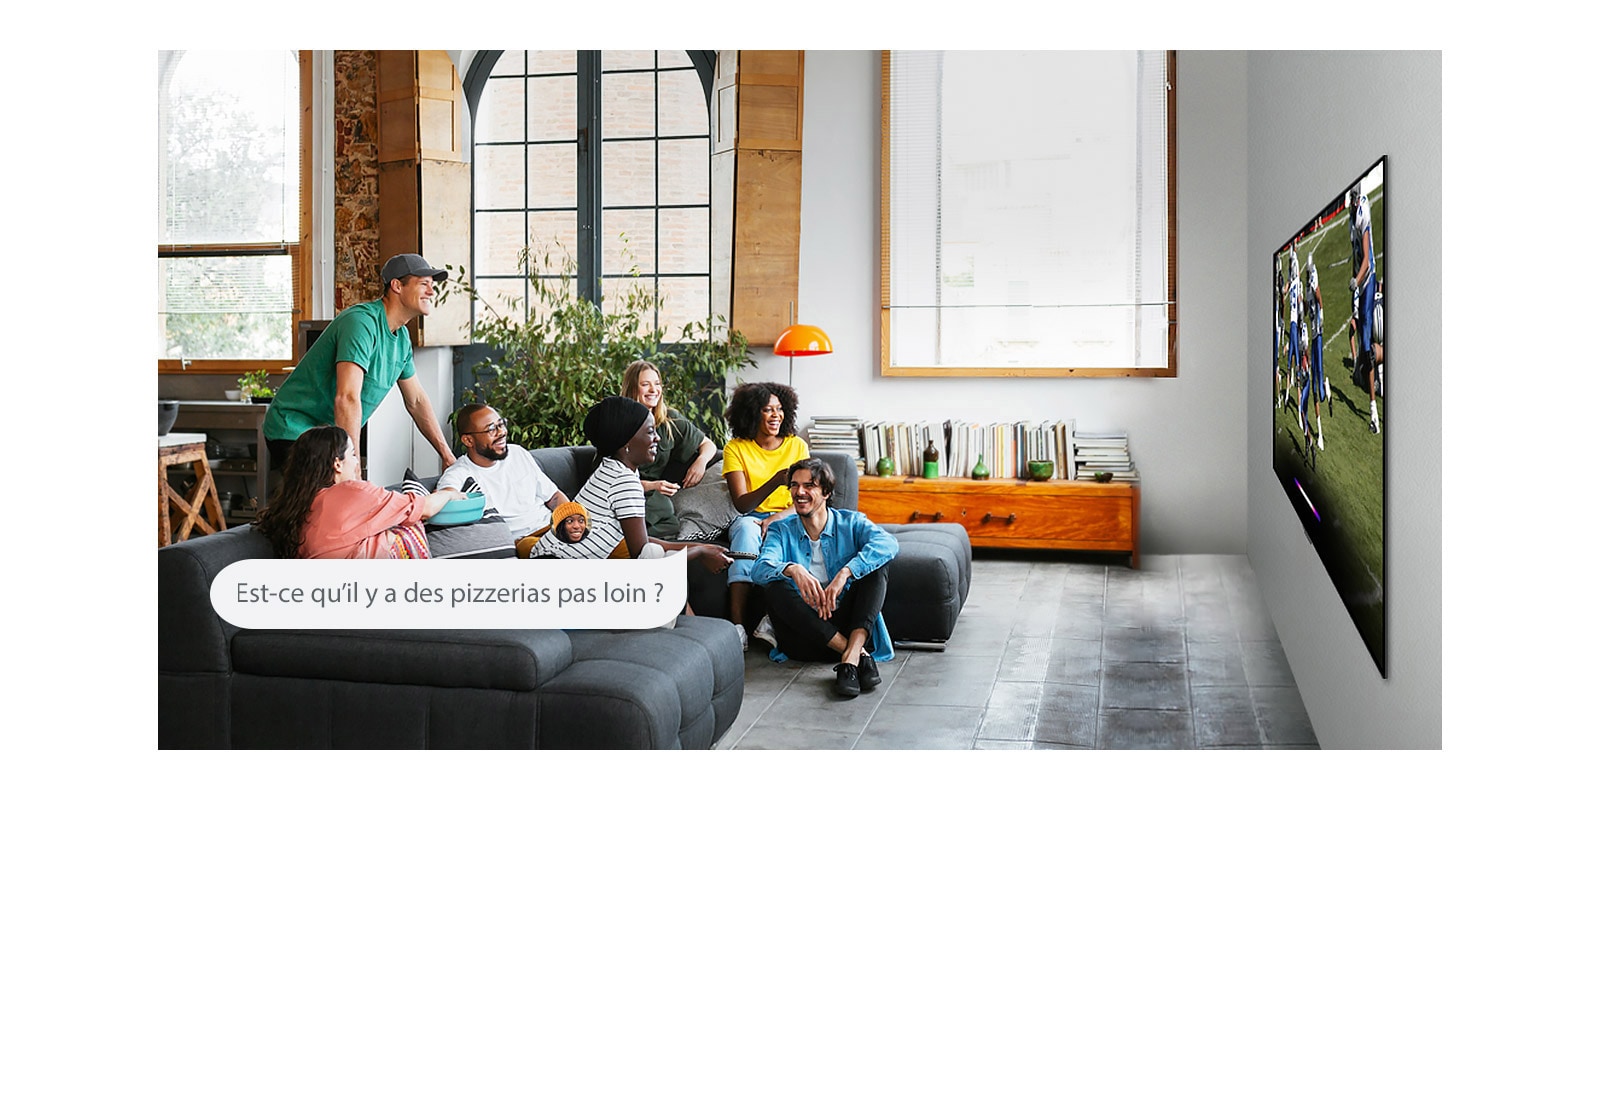 Une femme regarde du football avec des amis et demande à l’Assistant Google s’il y a des pizzerias pas loin